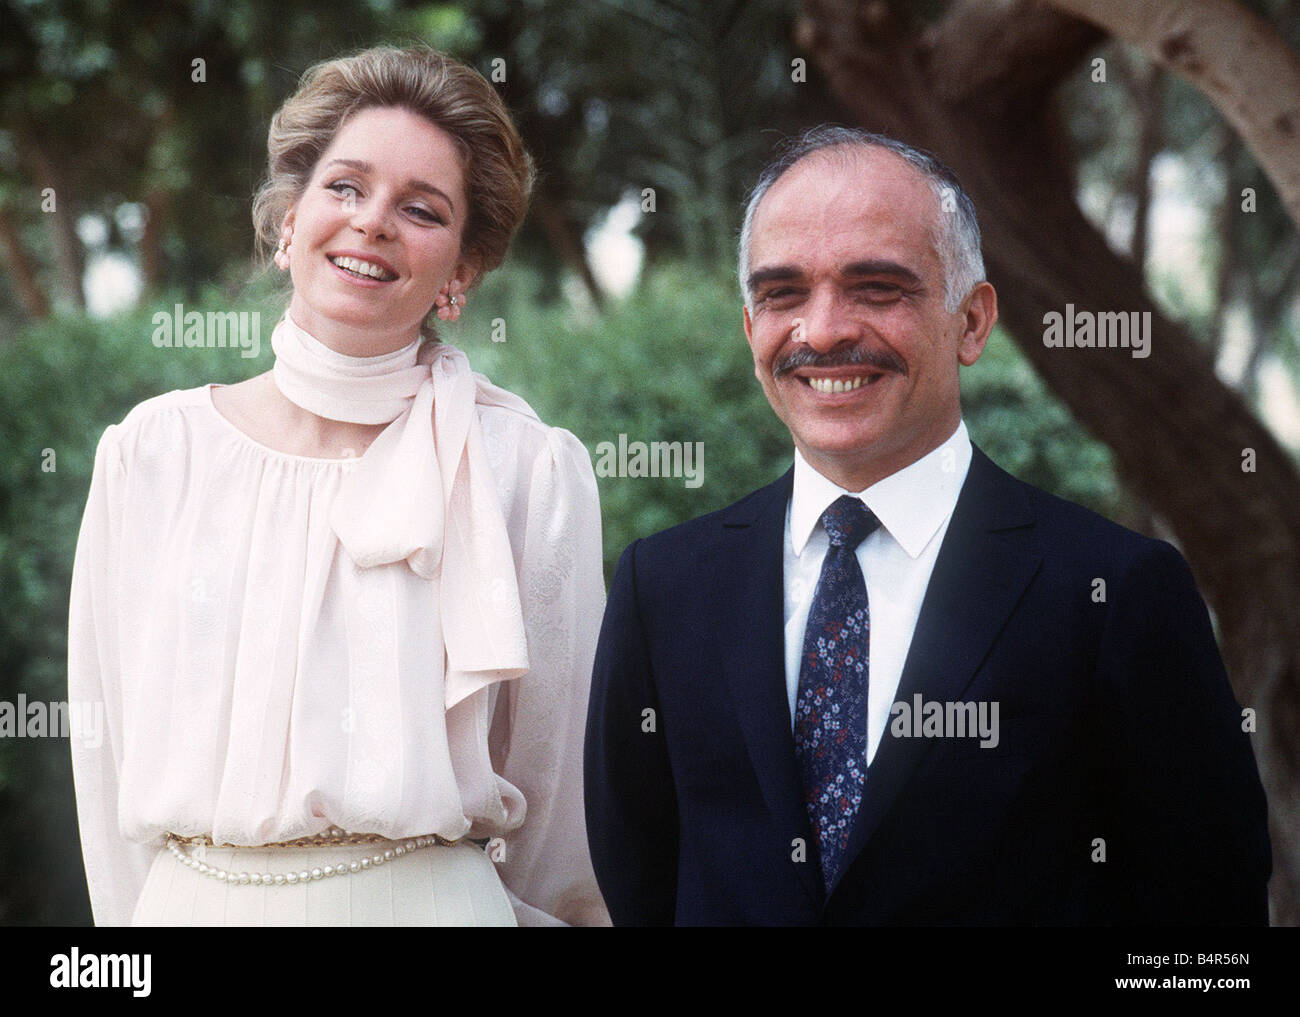 King hussein and queen noor of Jordan Stock Photo - Alamy